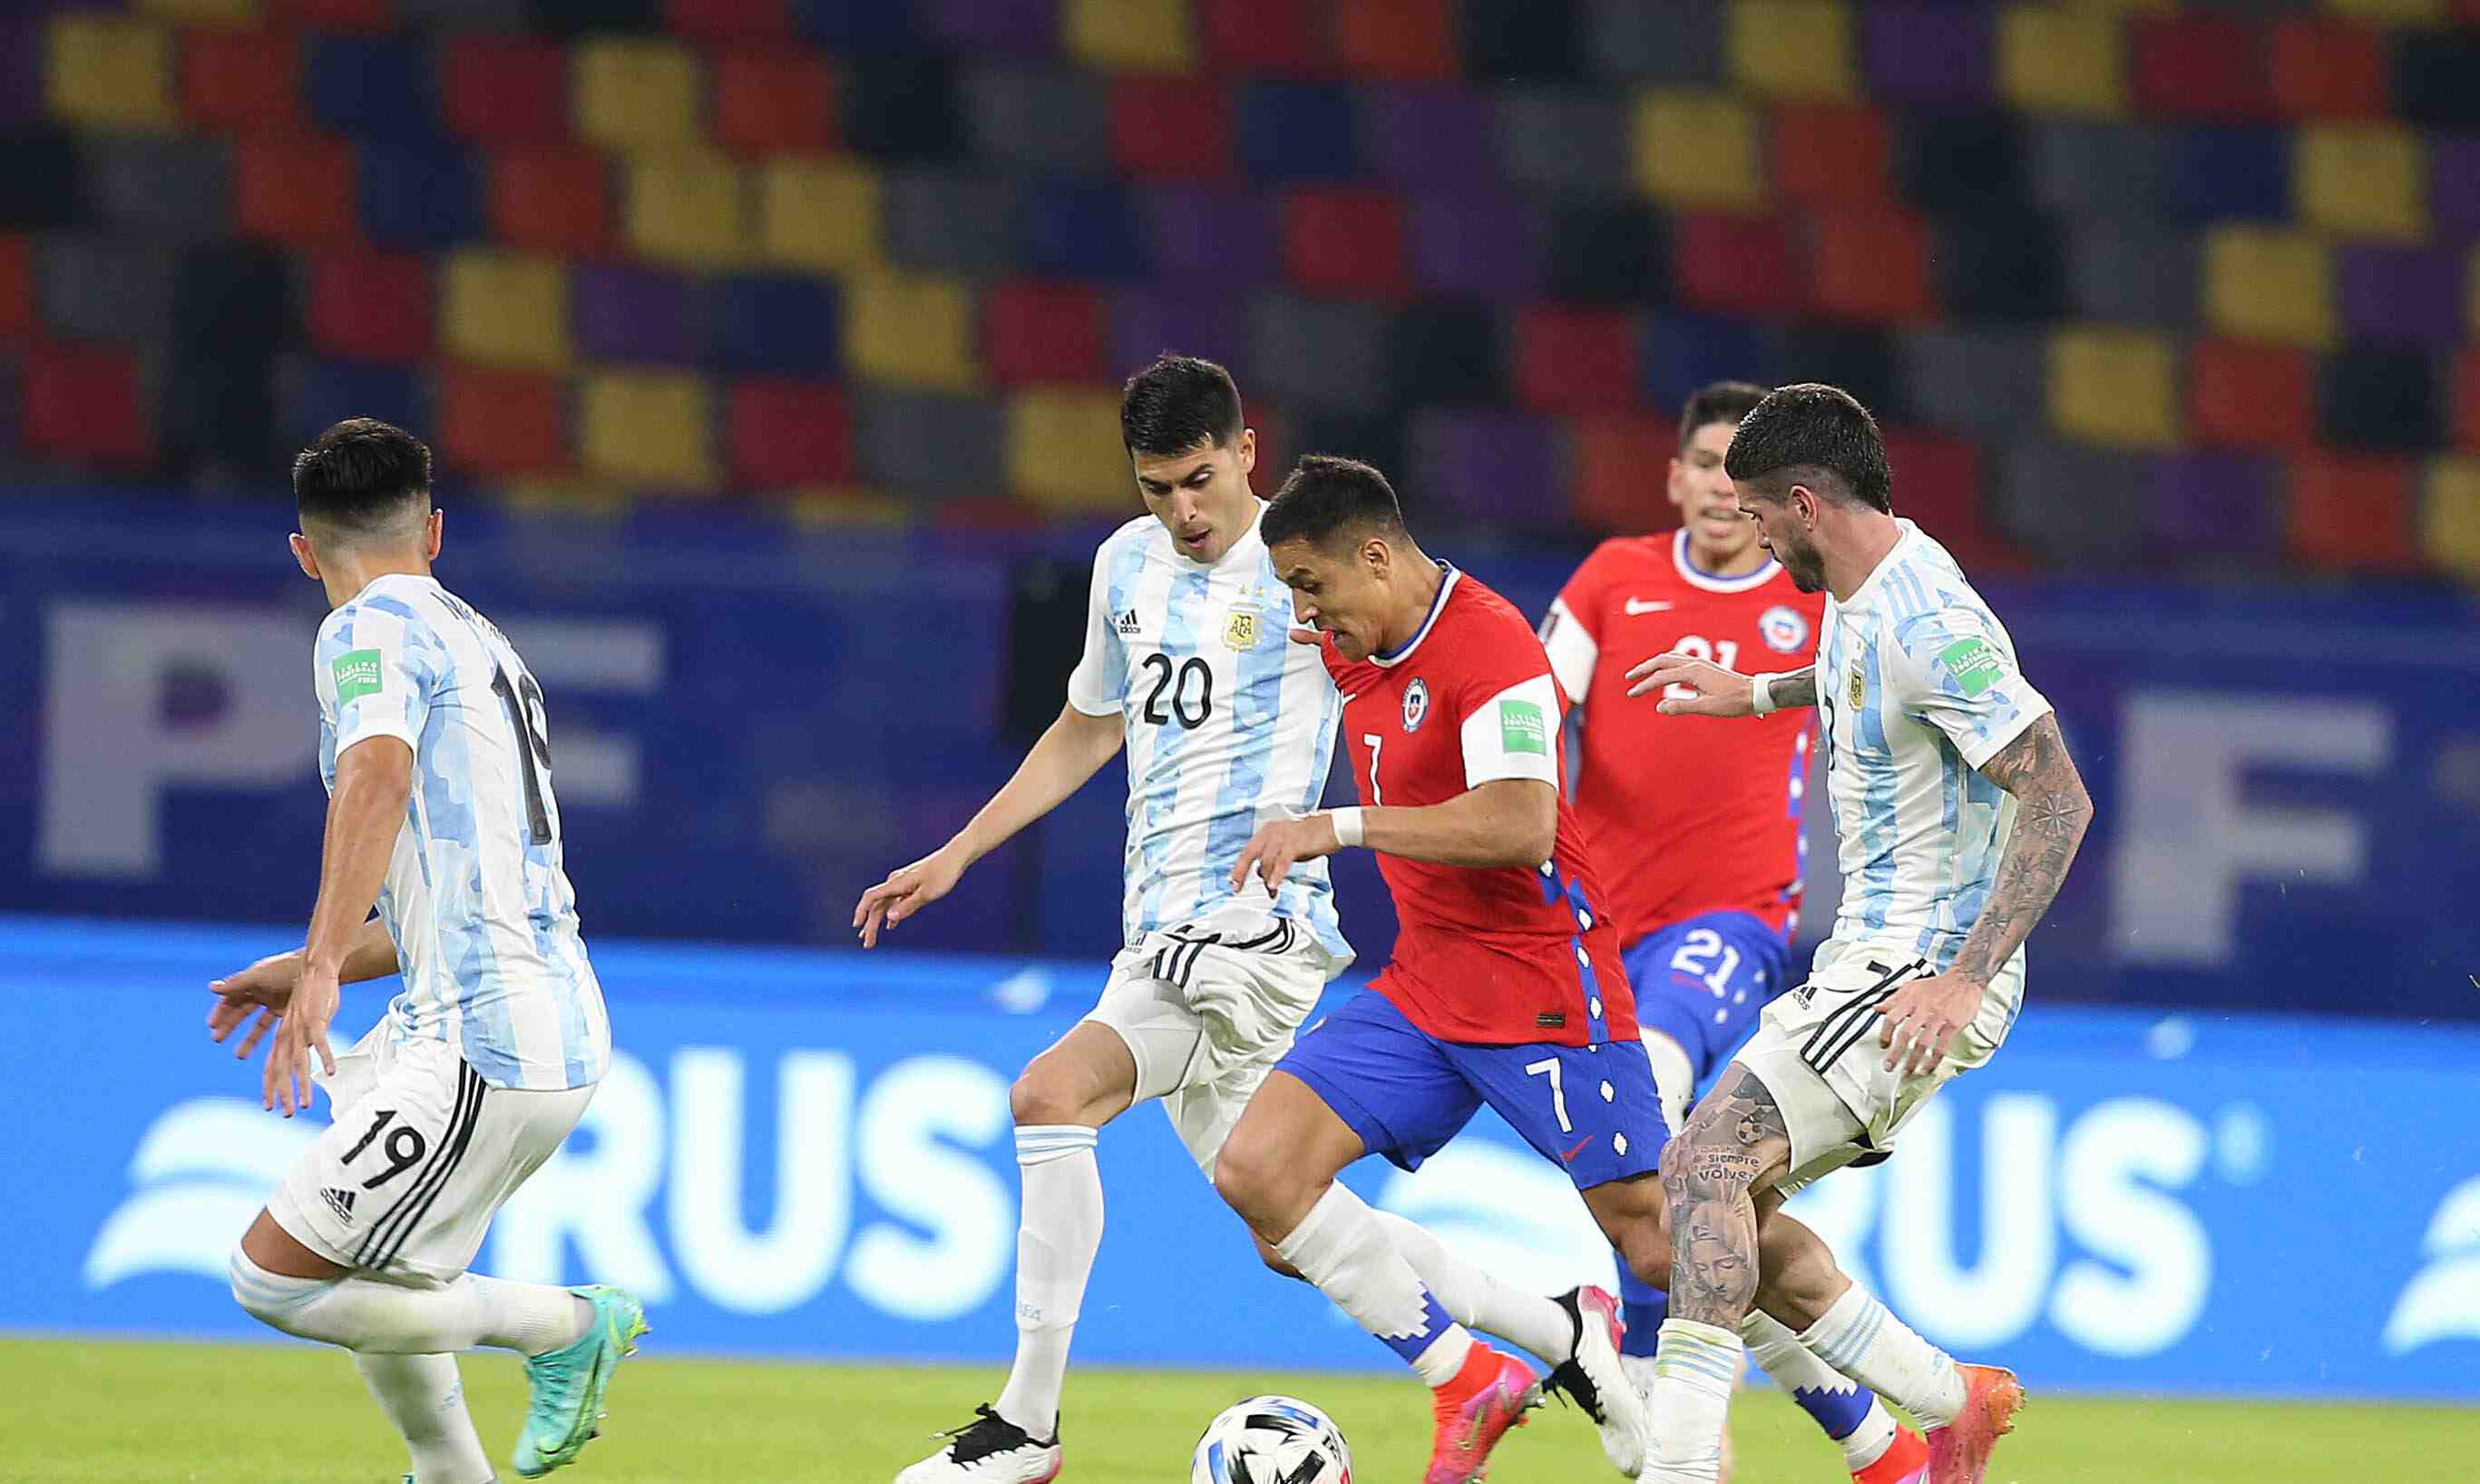 José Basualdo, mundialista con Argentina: “La altura puede influirle por igual a los dos equipos”